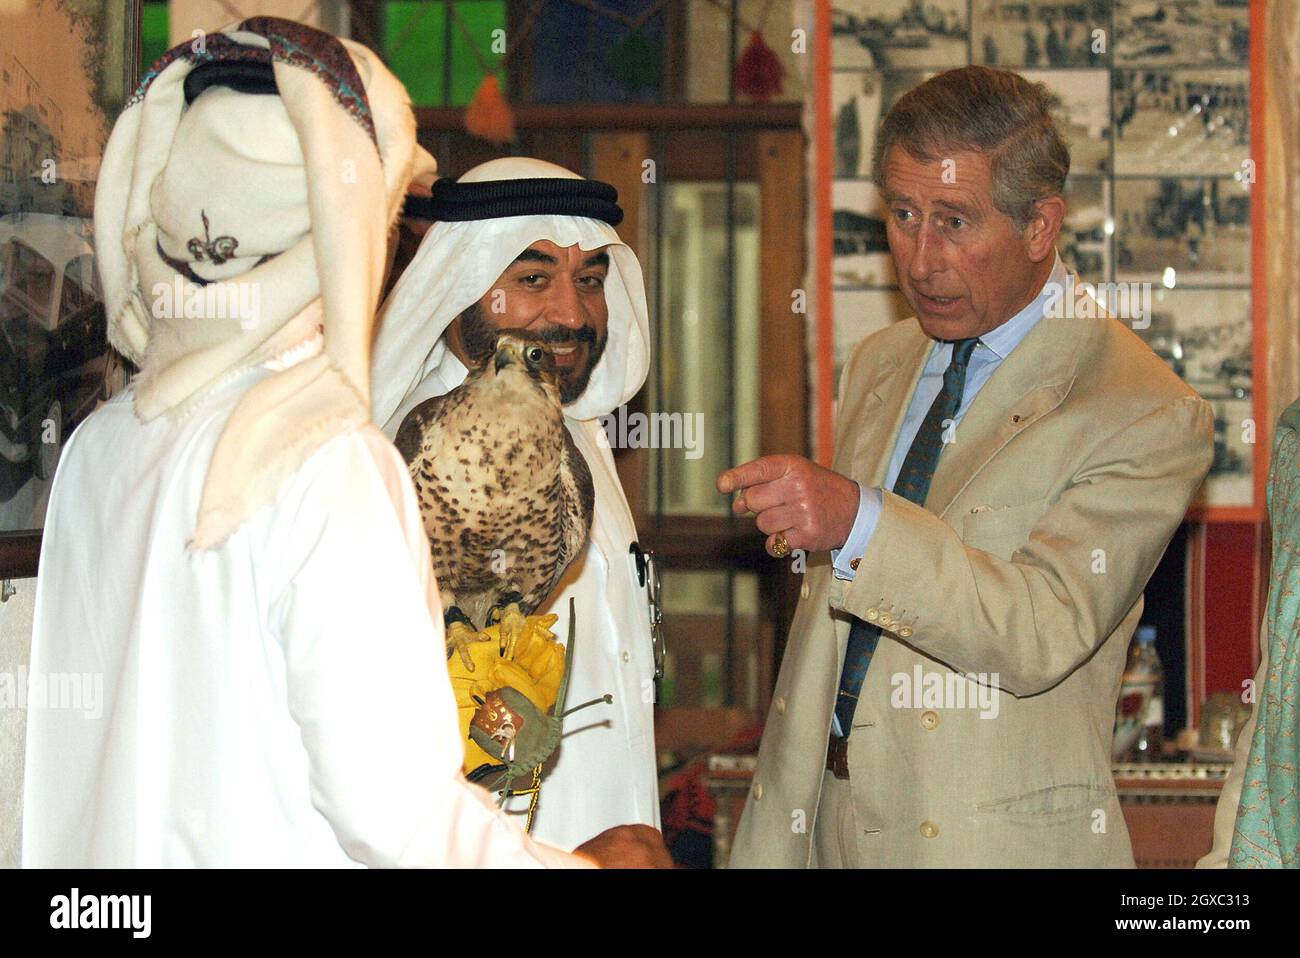 Il Principe Carlo, Principe di Galles, si ferma per guardare un falco durante una visita a un tradizionale suk arabo a Doha, Qatar il 23 febbraio 2007. Foto Stock